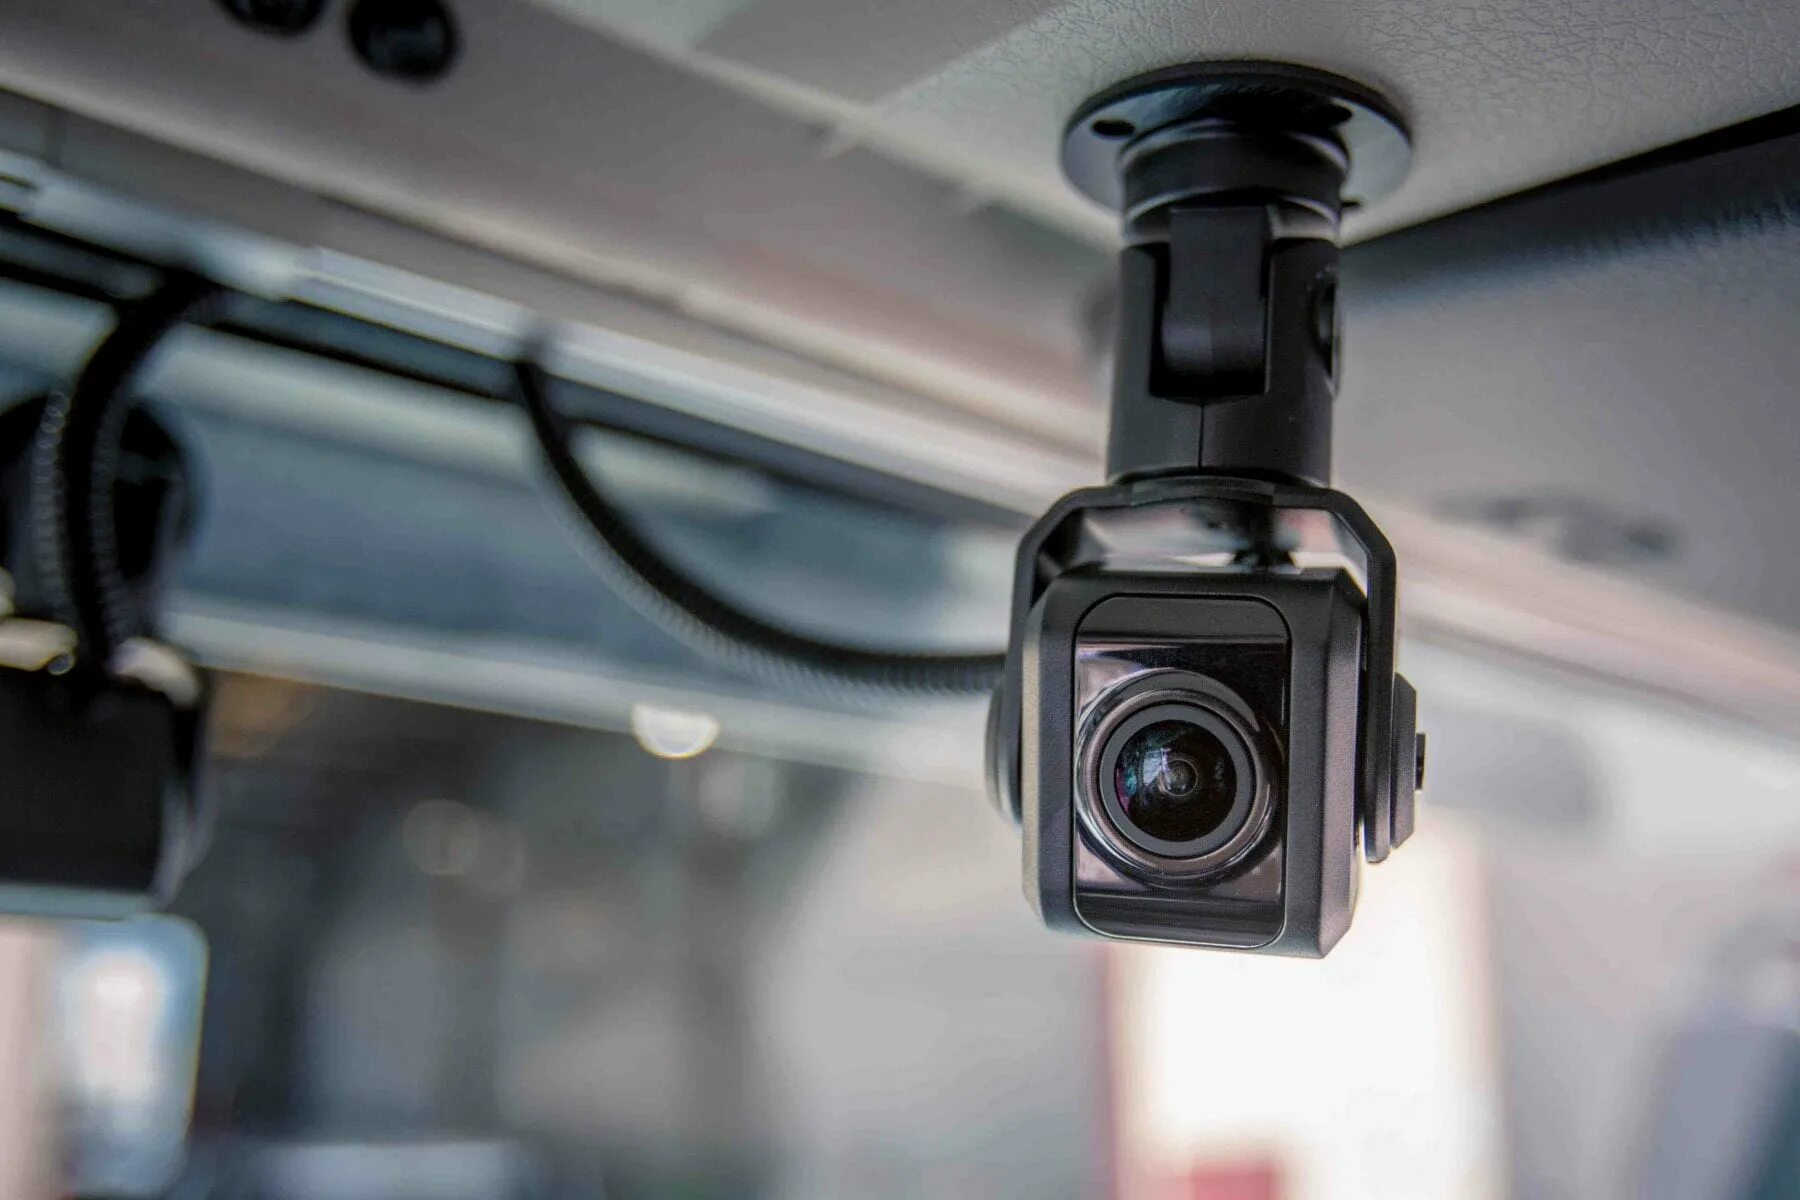 Камера вправо. Камера видеонаблюдения для автомобиля. Видеонаблюдение на транспорте. Видеокамера в автобусе.